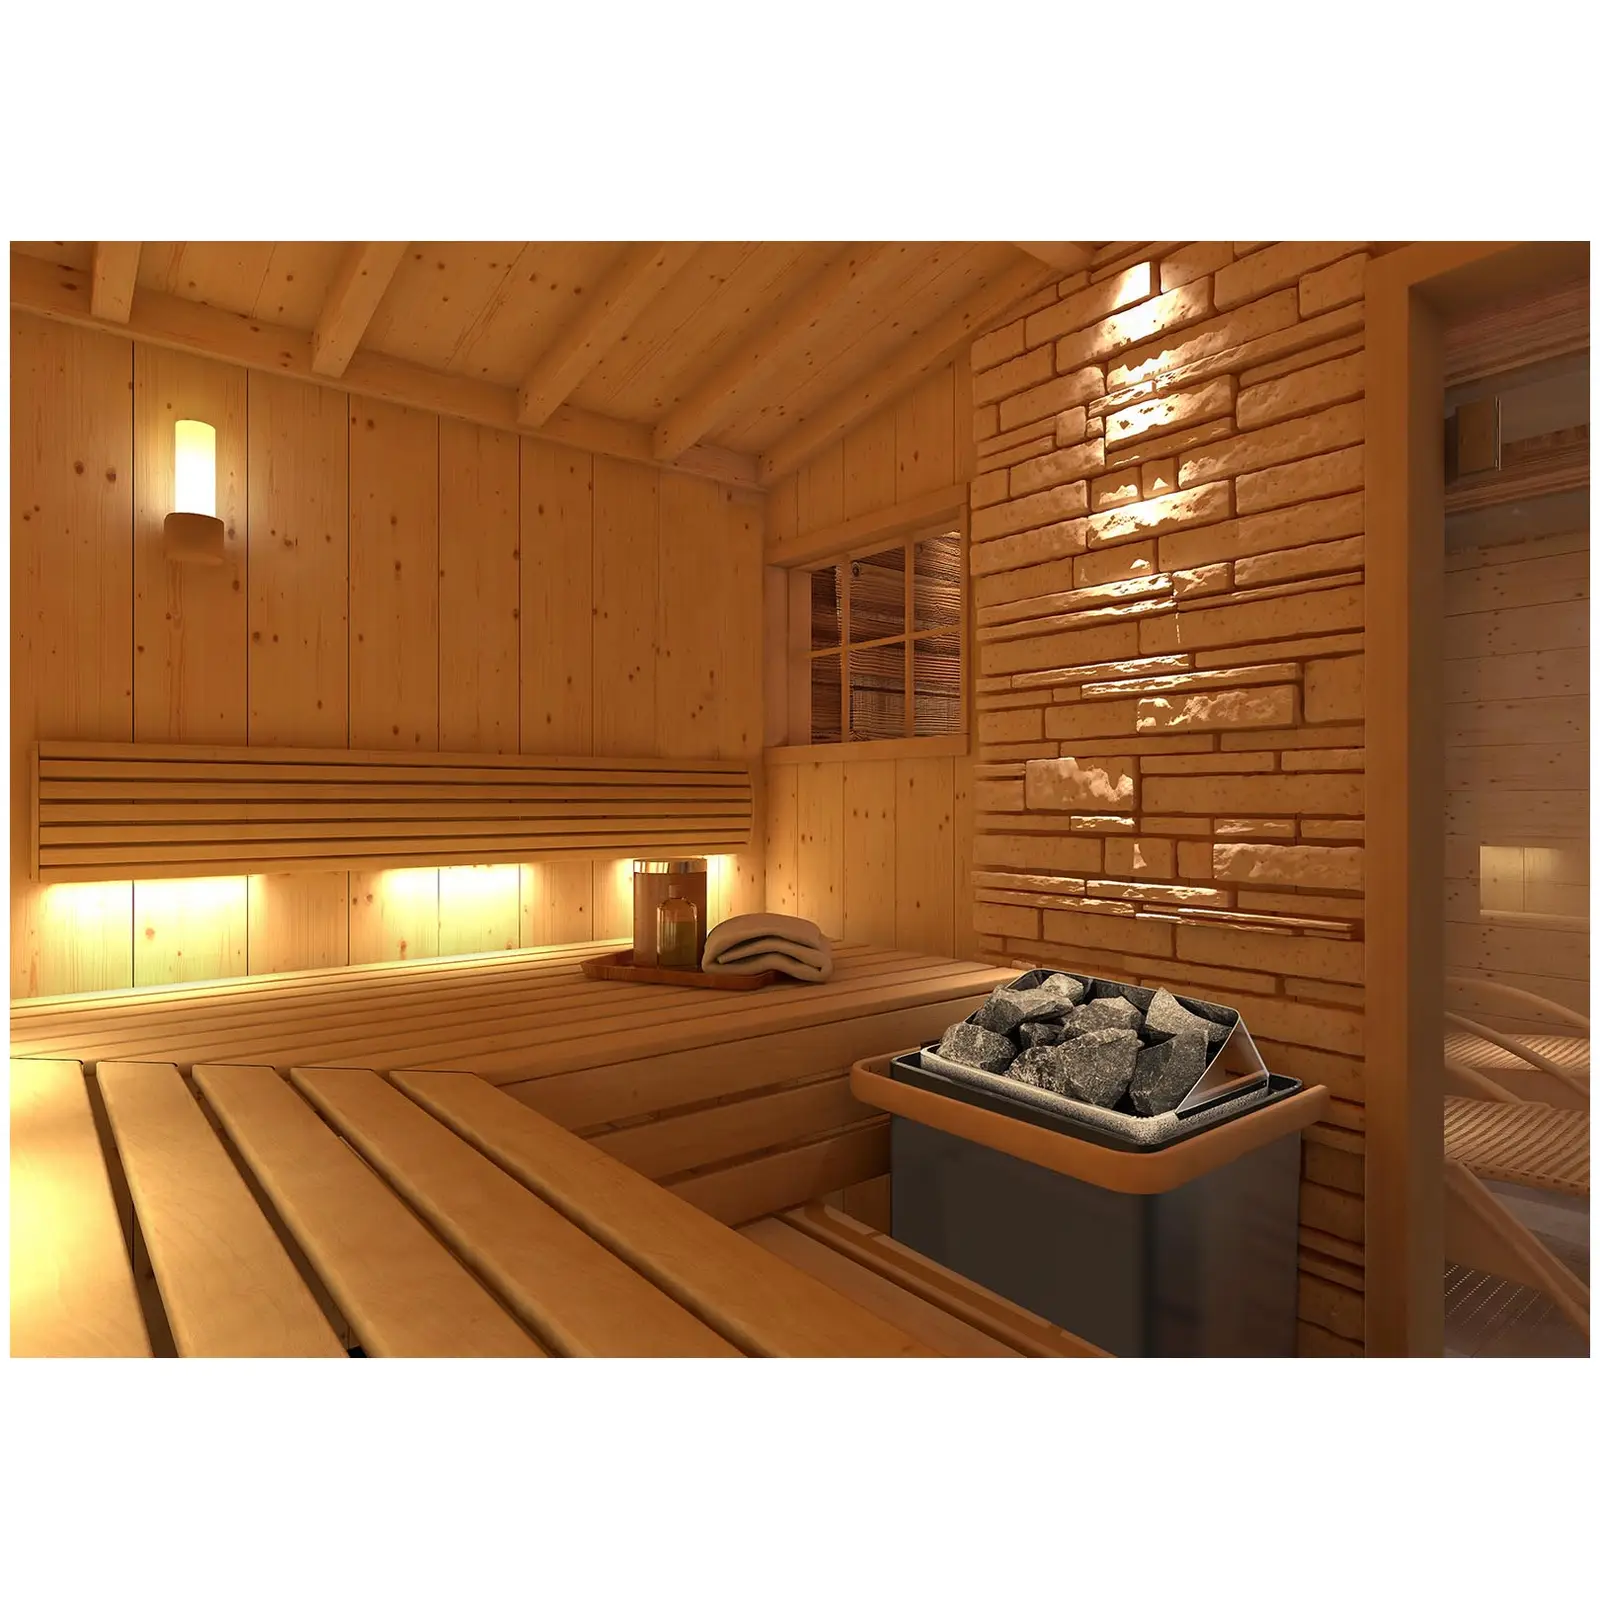 Zestaw Piec do sauny - 8 kW - 30-110°C + Kontroler do sauny - ekran LED